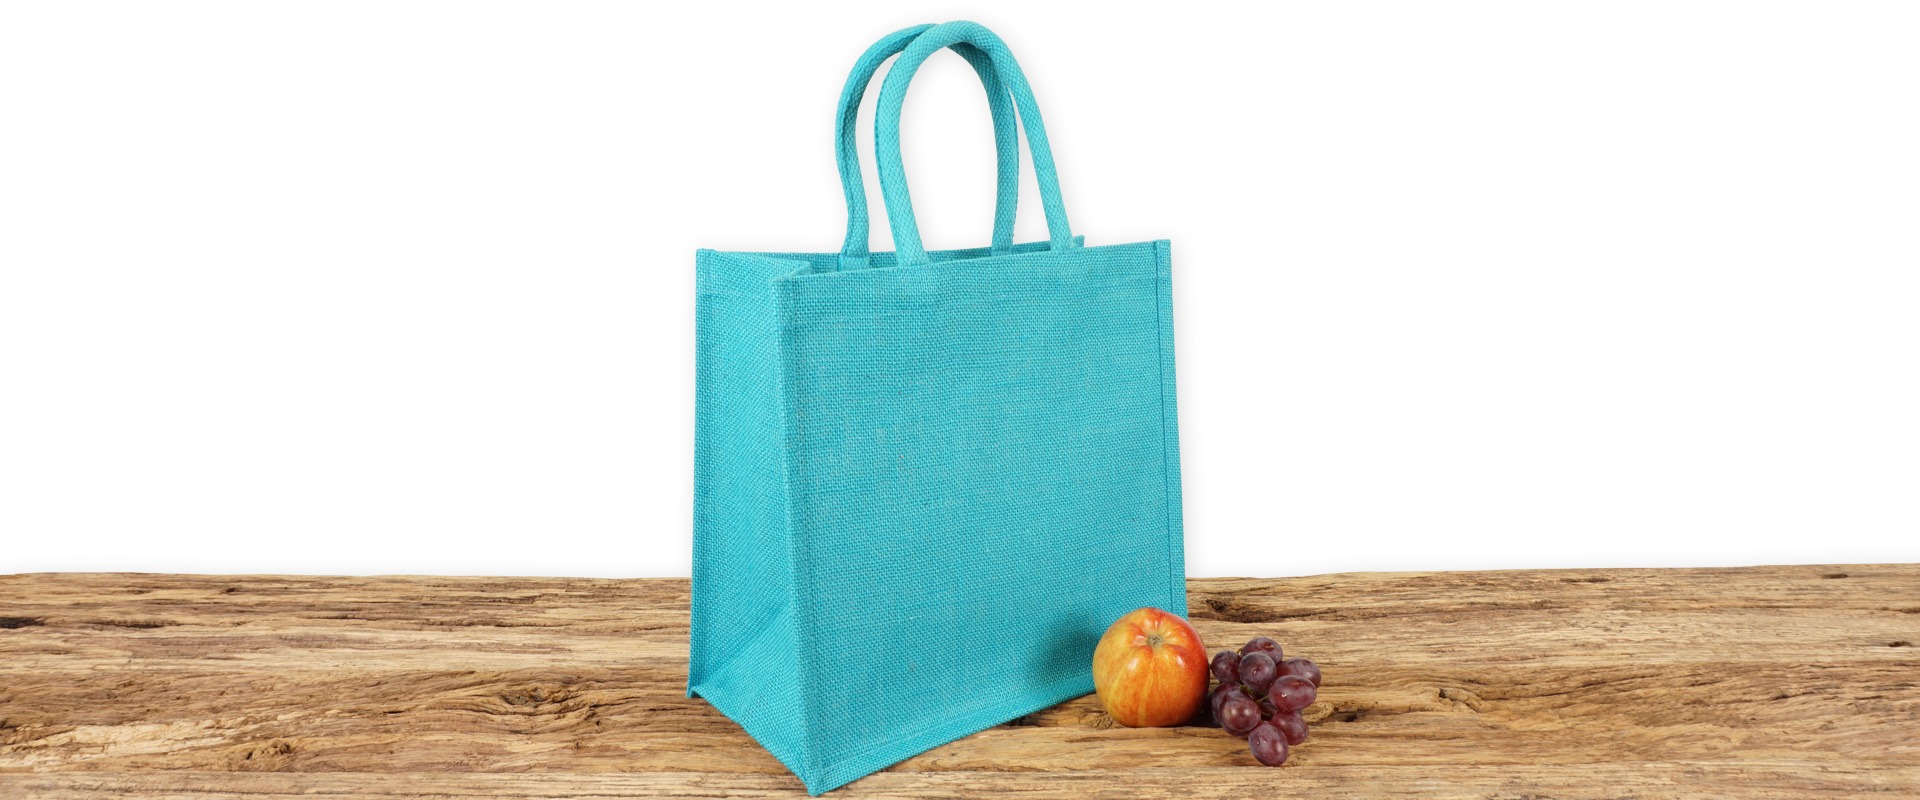 Einkaufstasche aus Jute zum Bedrucken für Handel und Gewerbe in Hellblau mit Seiten-Bodenfalte, klein und mit kurzen Tragegriffen auf Holz.